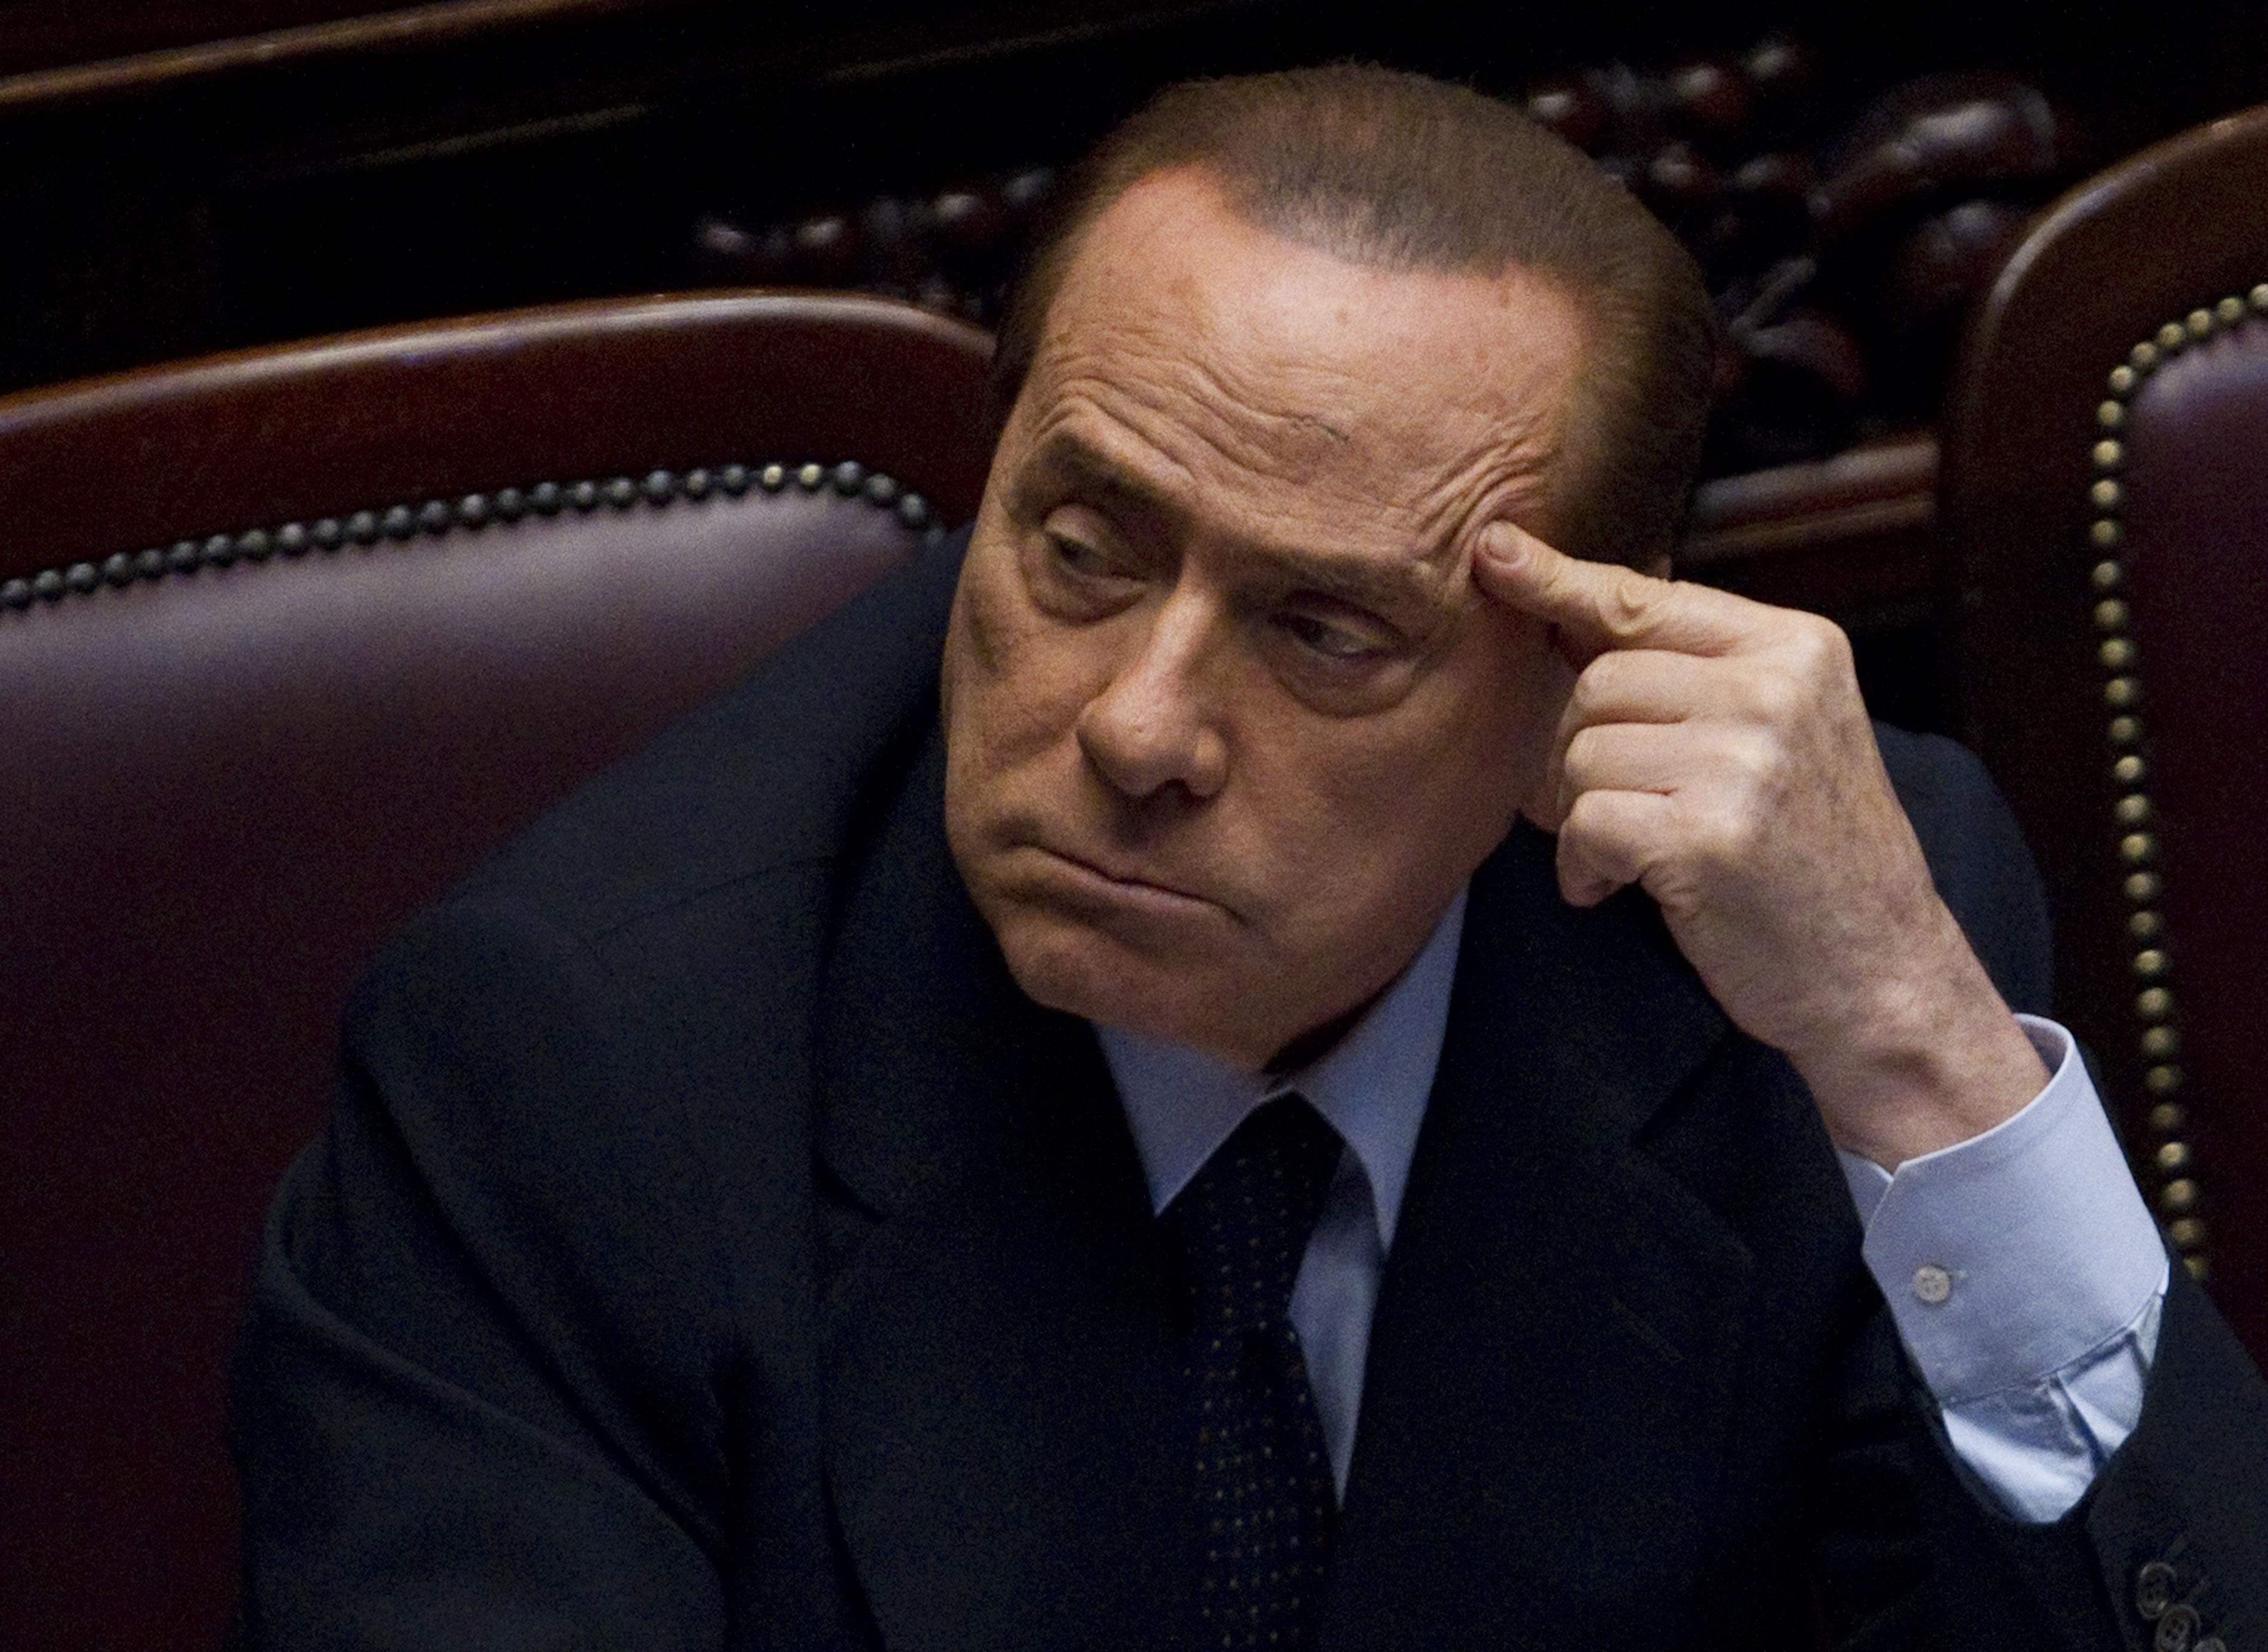 Köp av sexuell tjänst, Italien, Brott och straff, Sex- och samlevnad, Politik, Sexualbrott, Prostitution, Silvio Berlusconi, Utpressning, Berlusconi